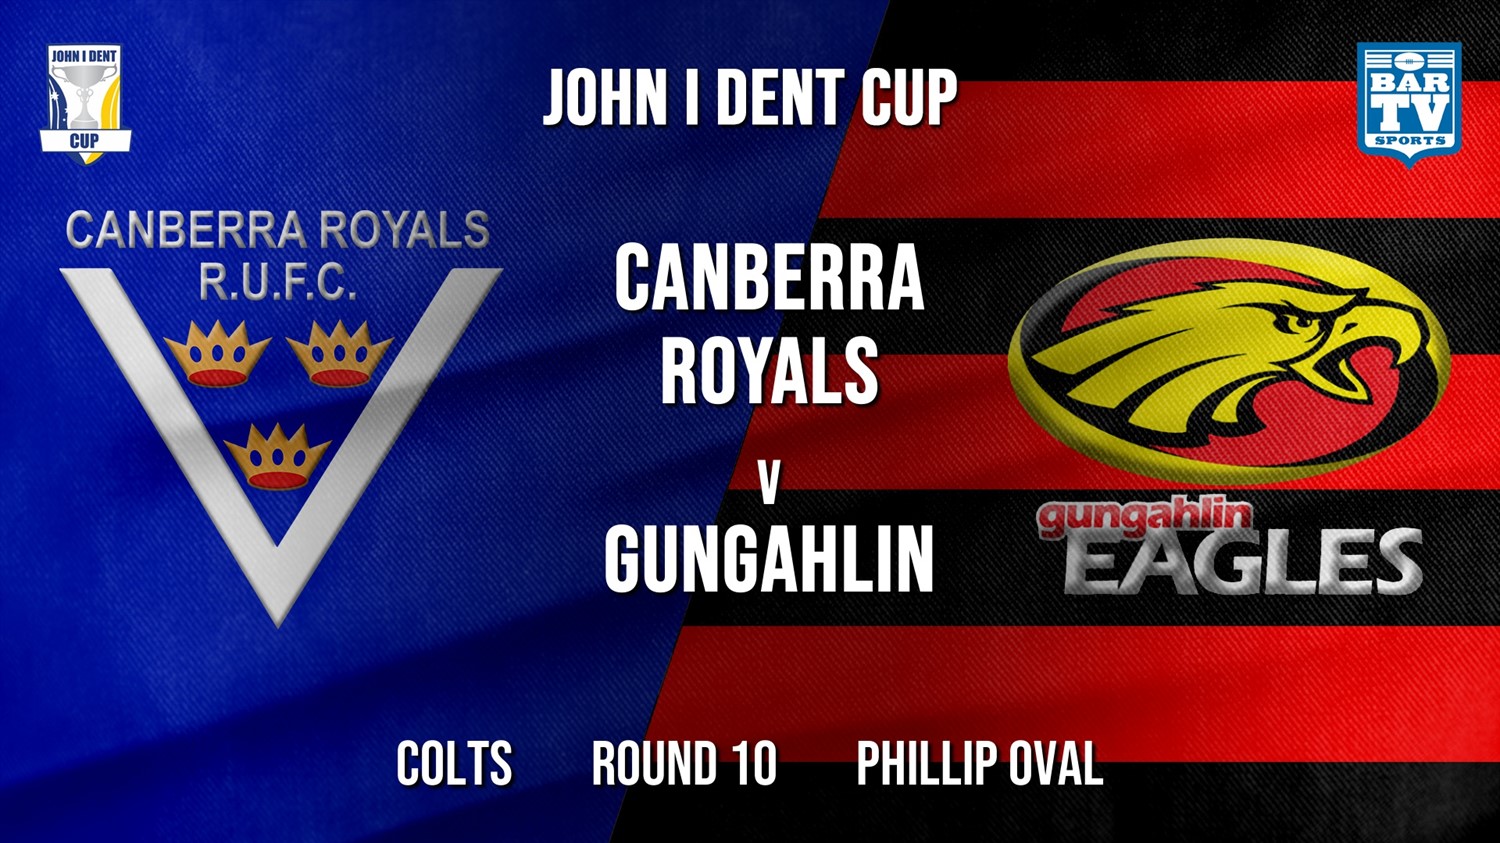 John I Dent Round 10 - Colts - Canberra Royals v Gungahlin Eagles Minigame Slate Image